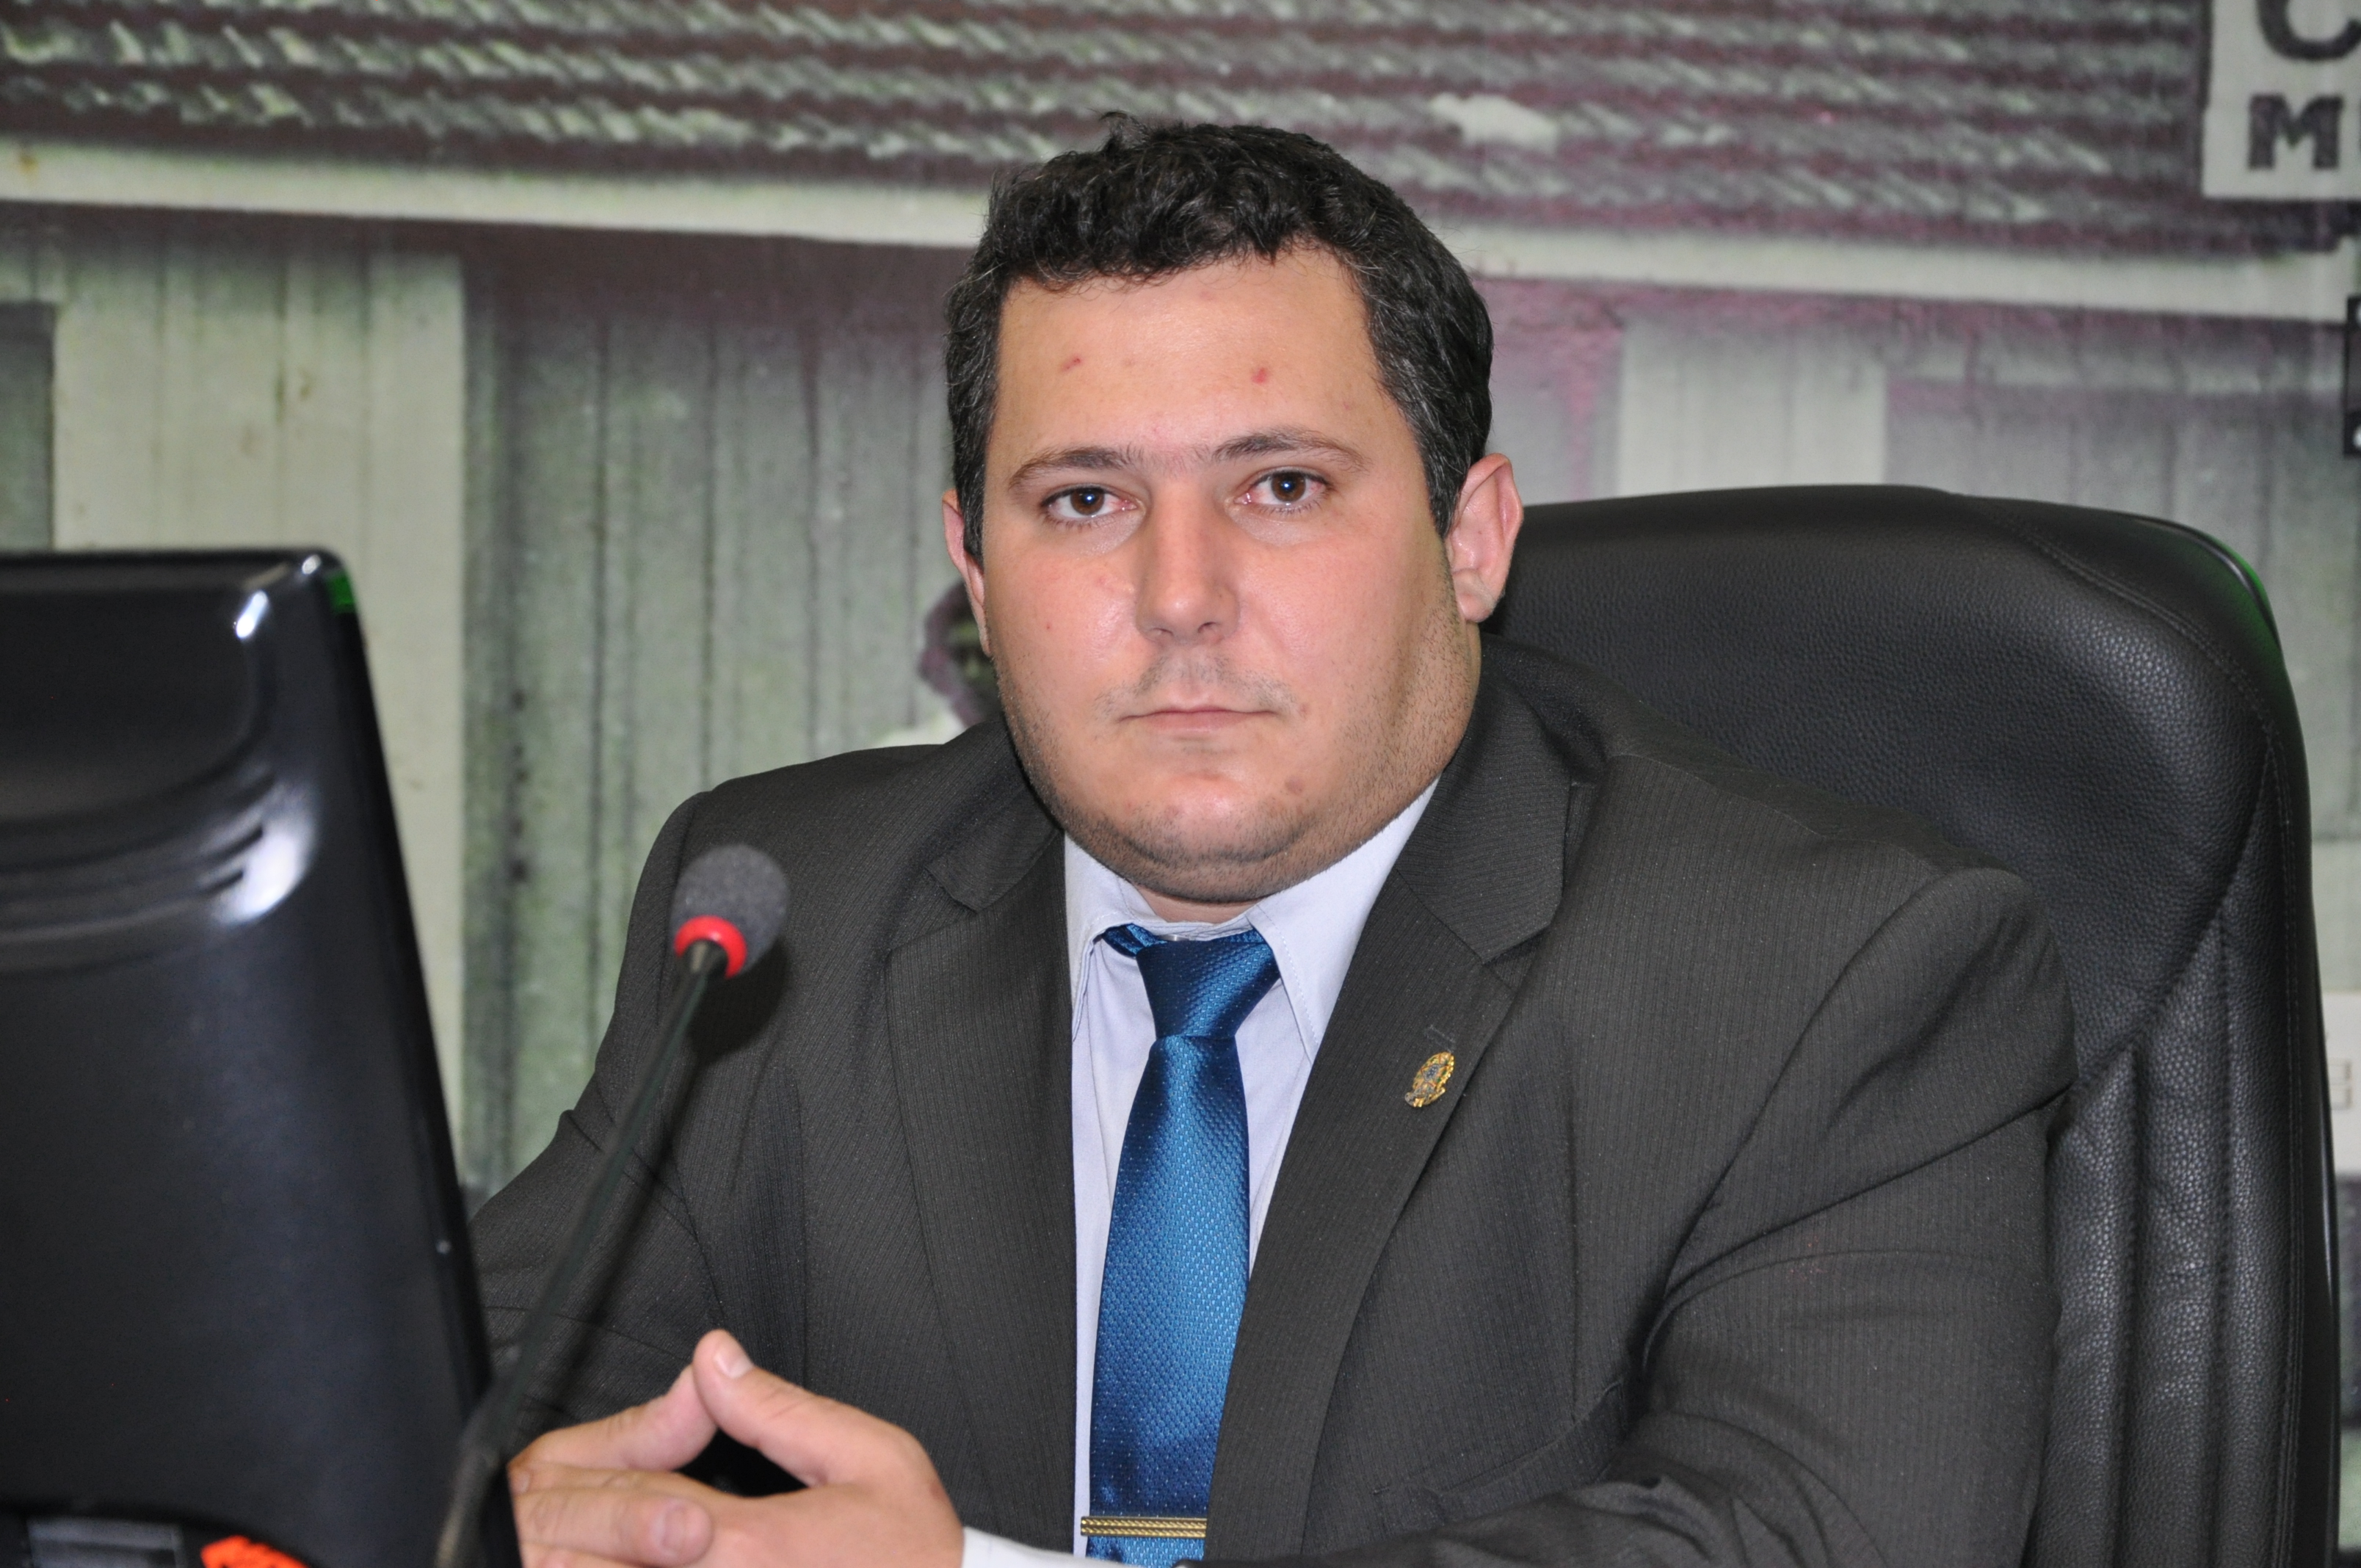 “Falta empenho pessoal do prefeito para atrair indústrias”, afirma Claudinho Frare